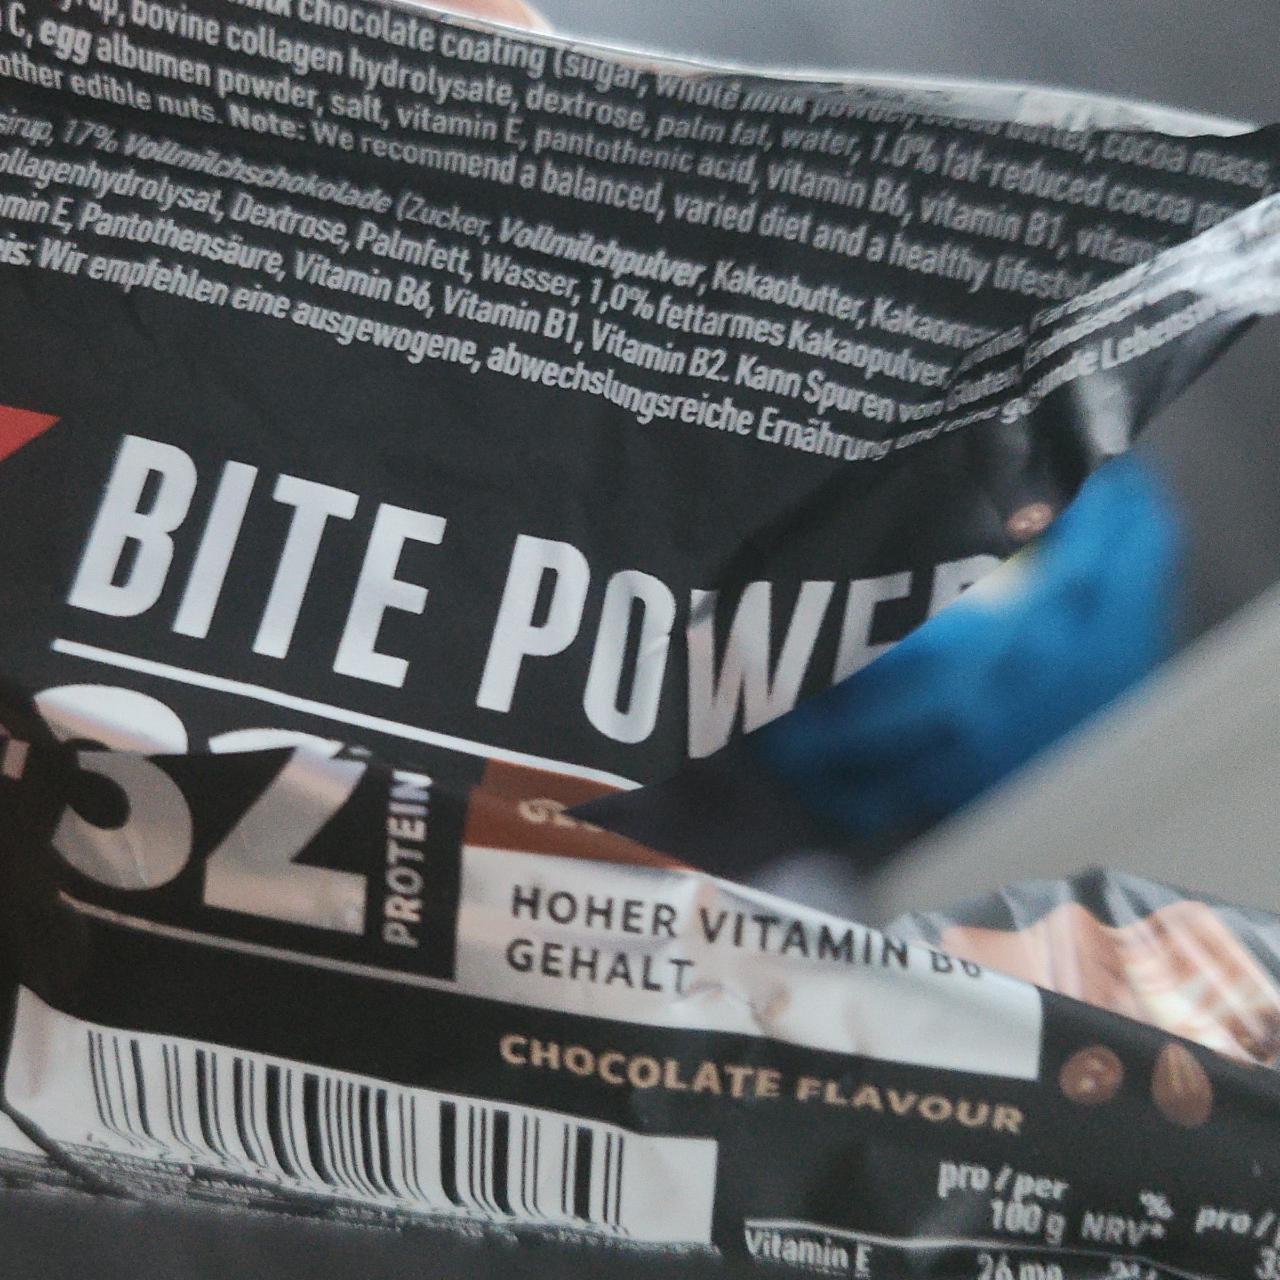 Zdjęcia - Bite power 32% chocloate flavour Power system